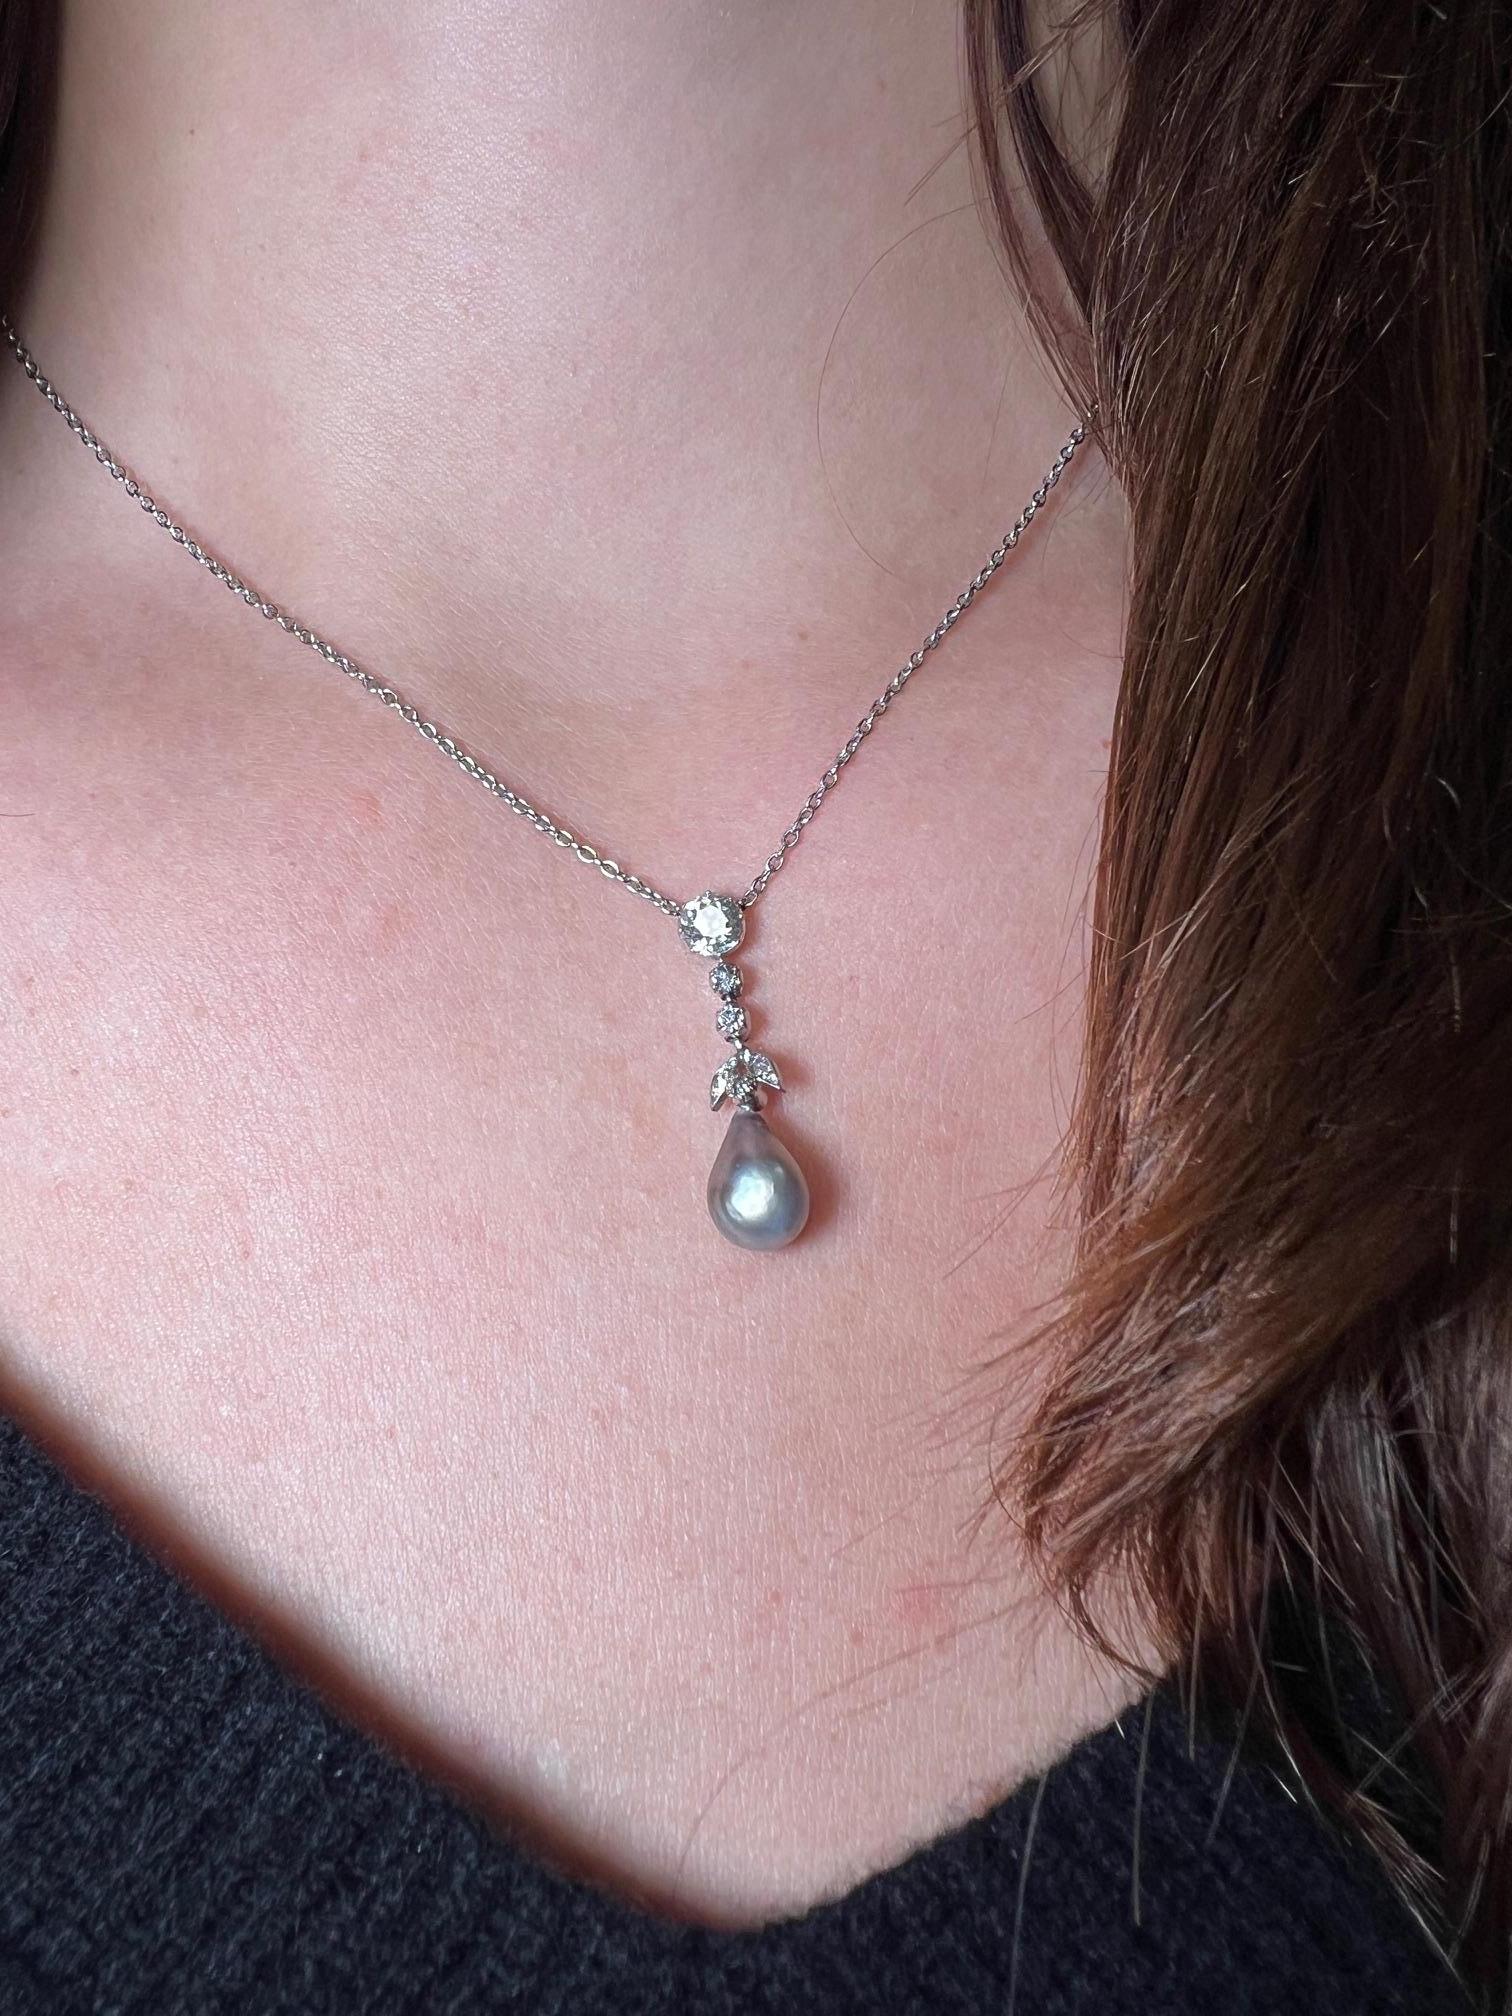 Diese wunderschöne tropfenförmige Perlenkette ist an einem Anhänger mit einem Diamanten im alten europäischen Schliff und fünf natürlichen Diamanten im Einzelschliff gefasst. Die Platin-Halskette trägt diesen atemberaubenden Anhänger - ein zeitloses